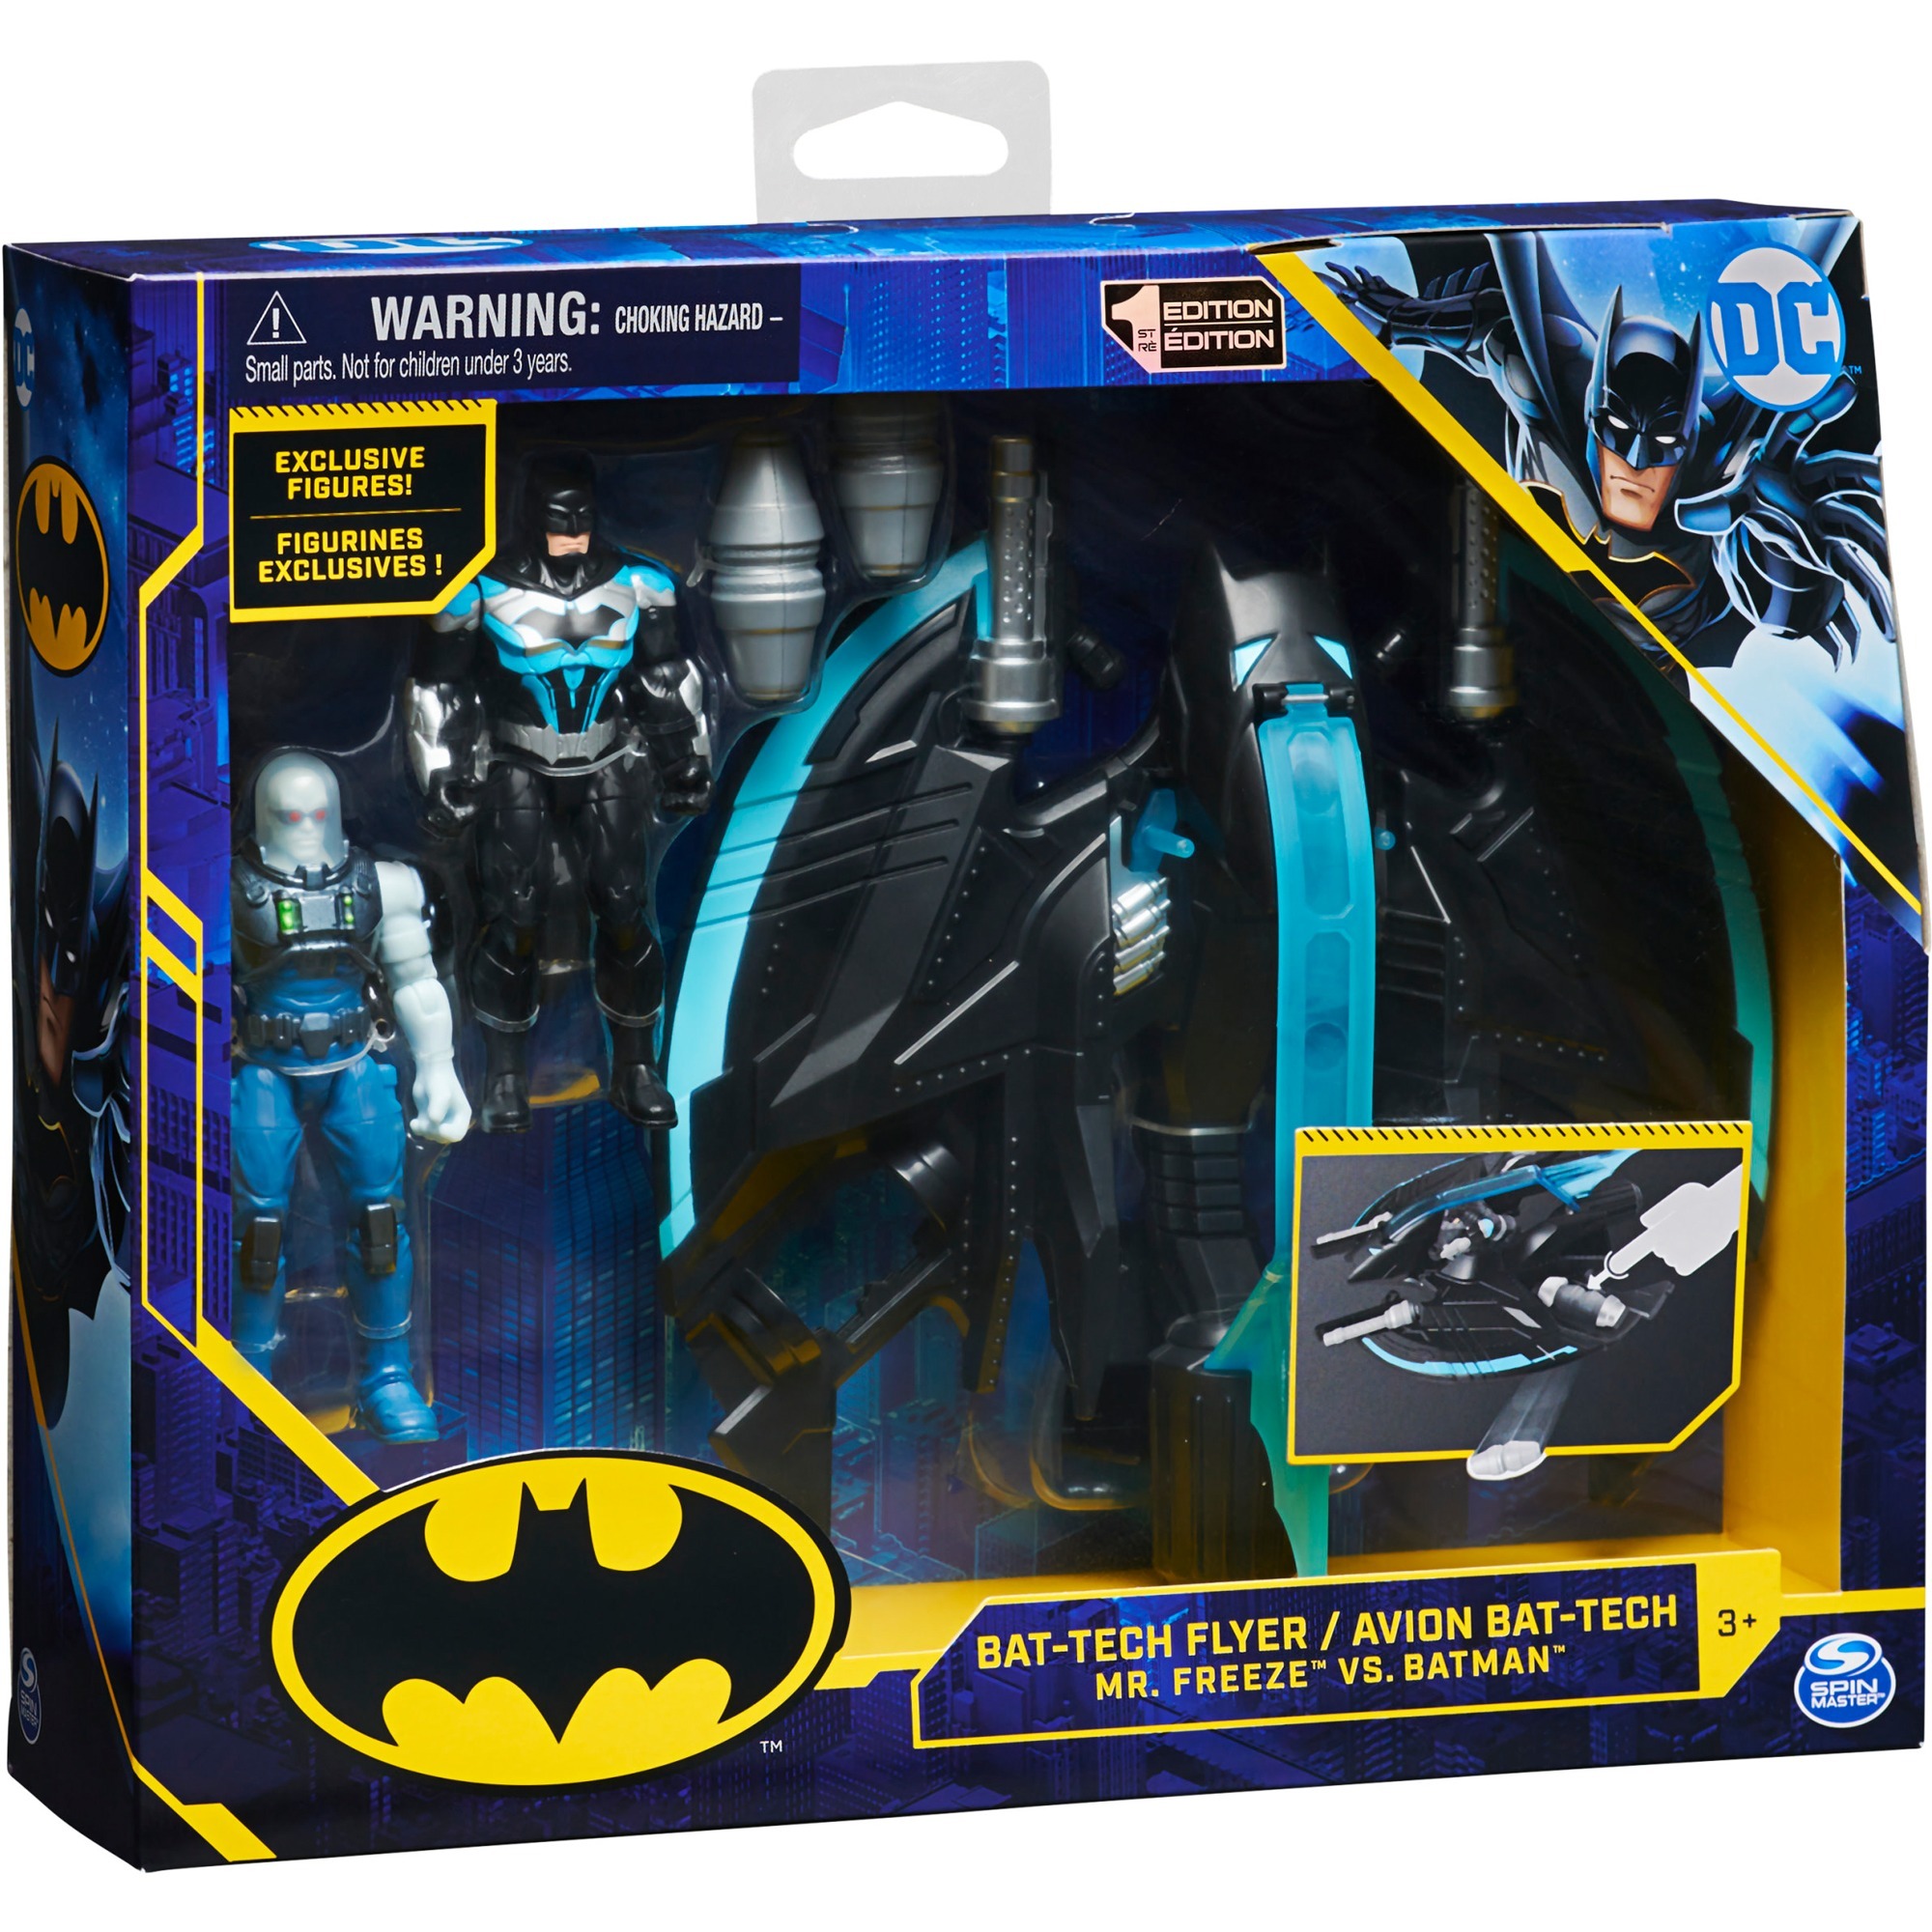 Image of Alternate - Batman Bat-Tech Flyer mit 2x 10cm Actionfiguren von Batman und Mr. Freeze, inkl. abwerfbarer Granaten, Spielfigur online einkaufen bei Alternate